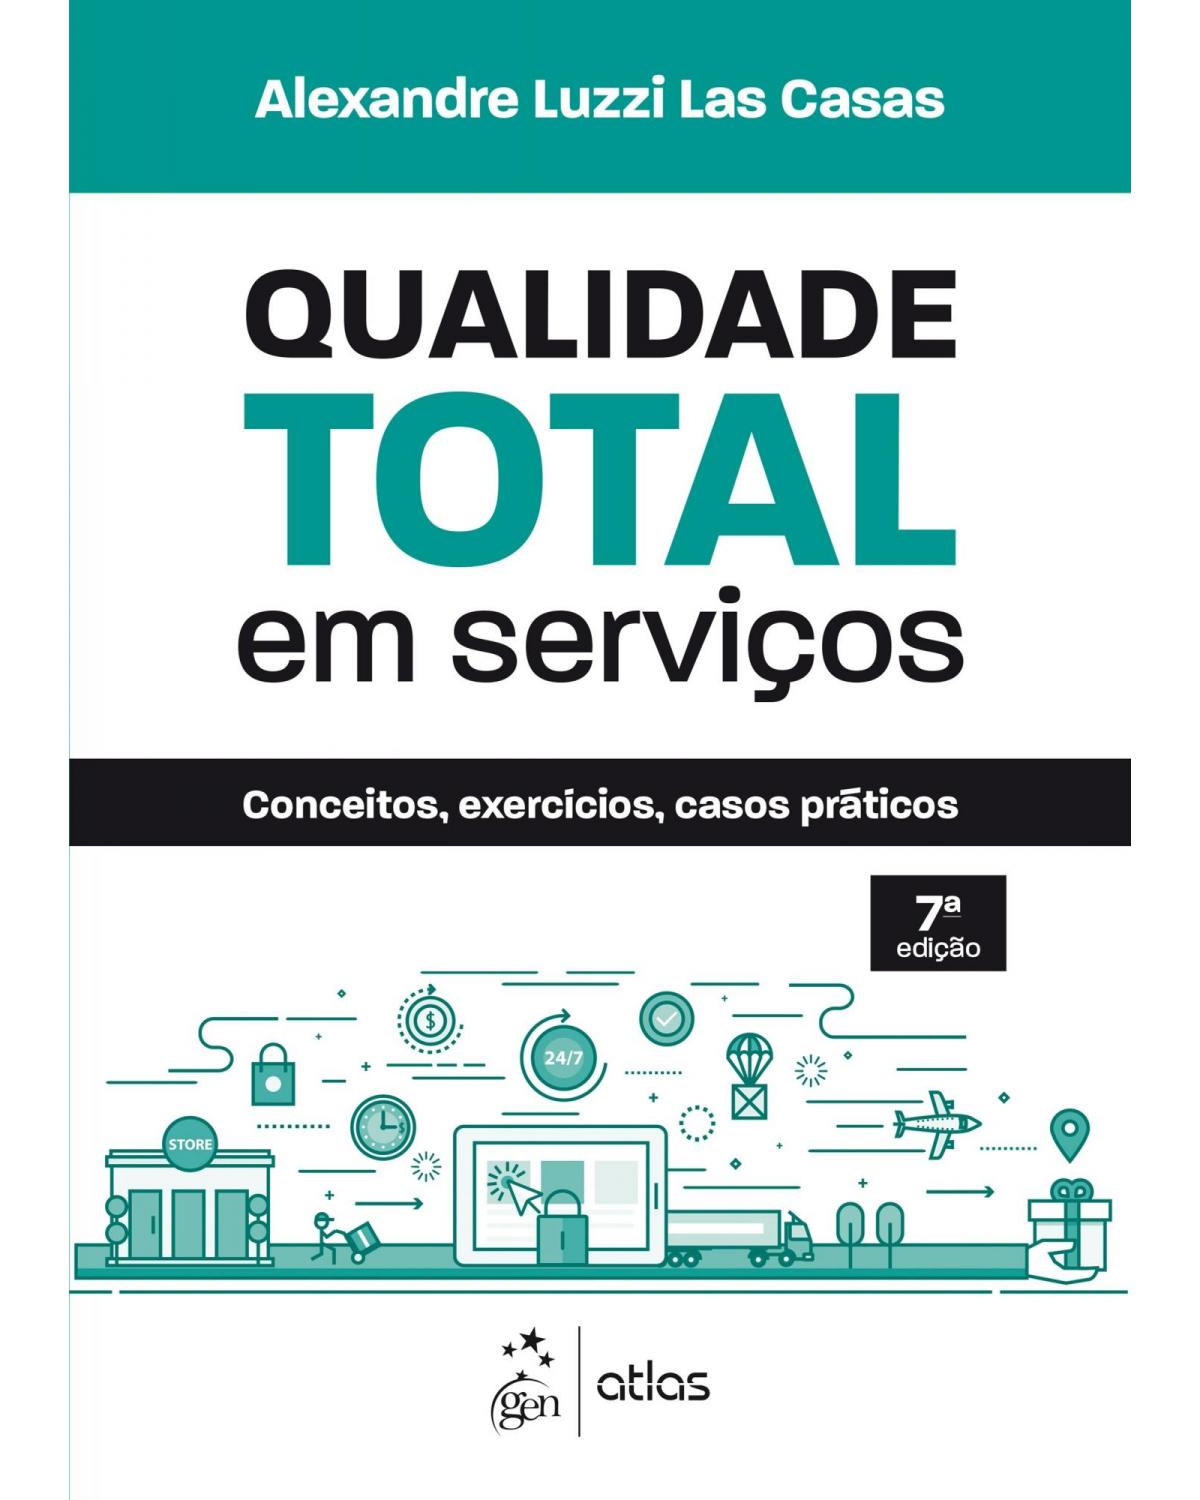 Qualidade total em serviços - conceitos, exercícios, casos práticos - 7ª Edição | 2020